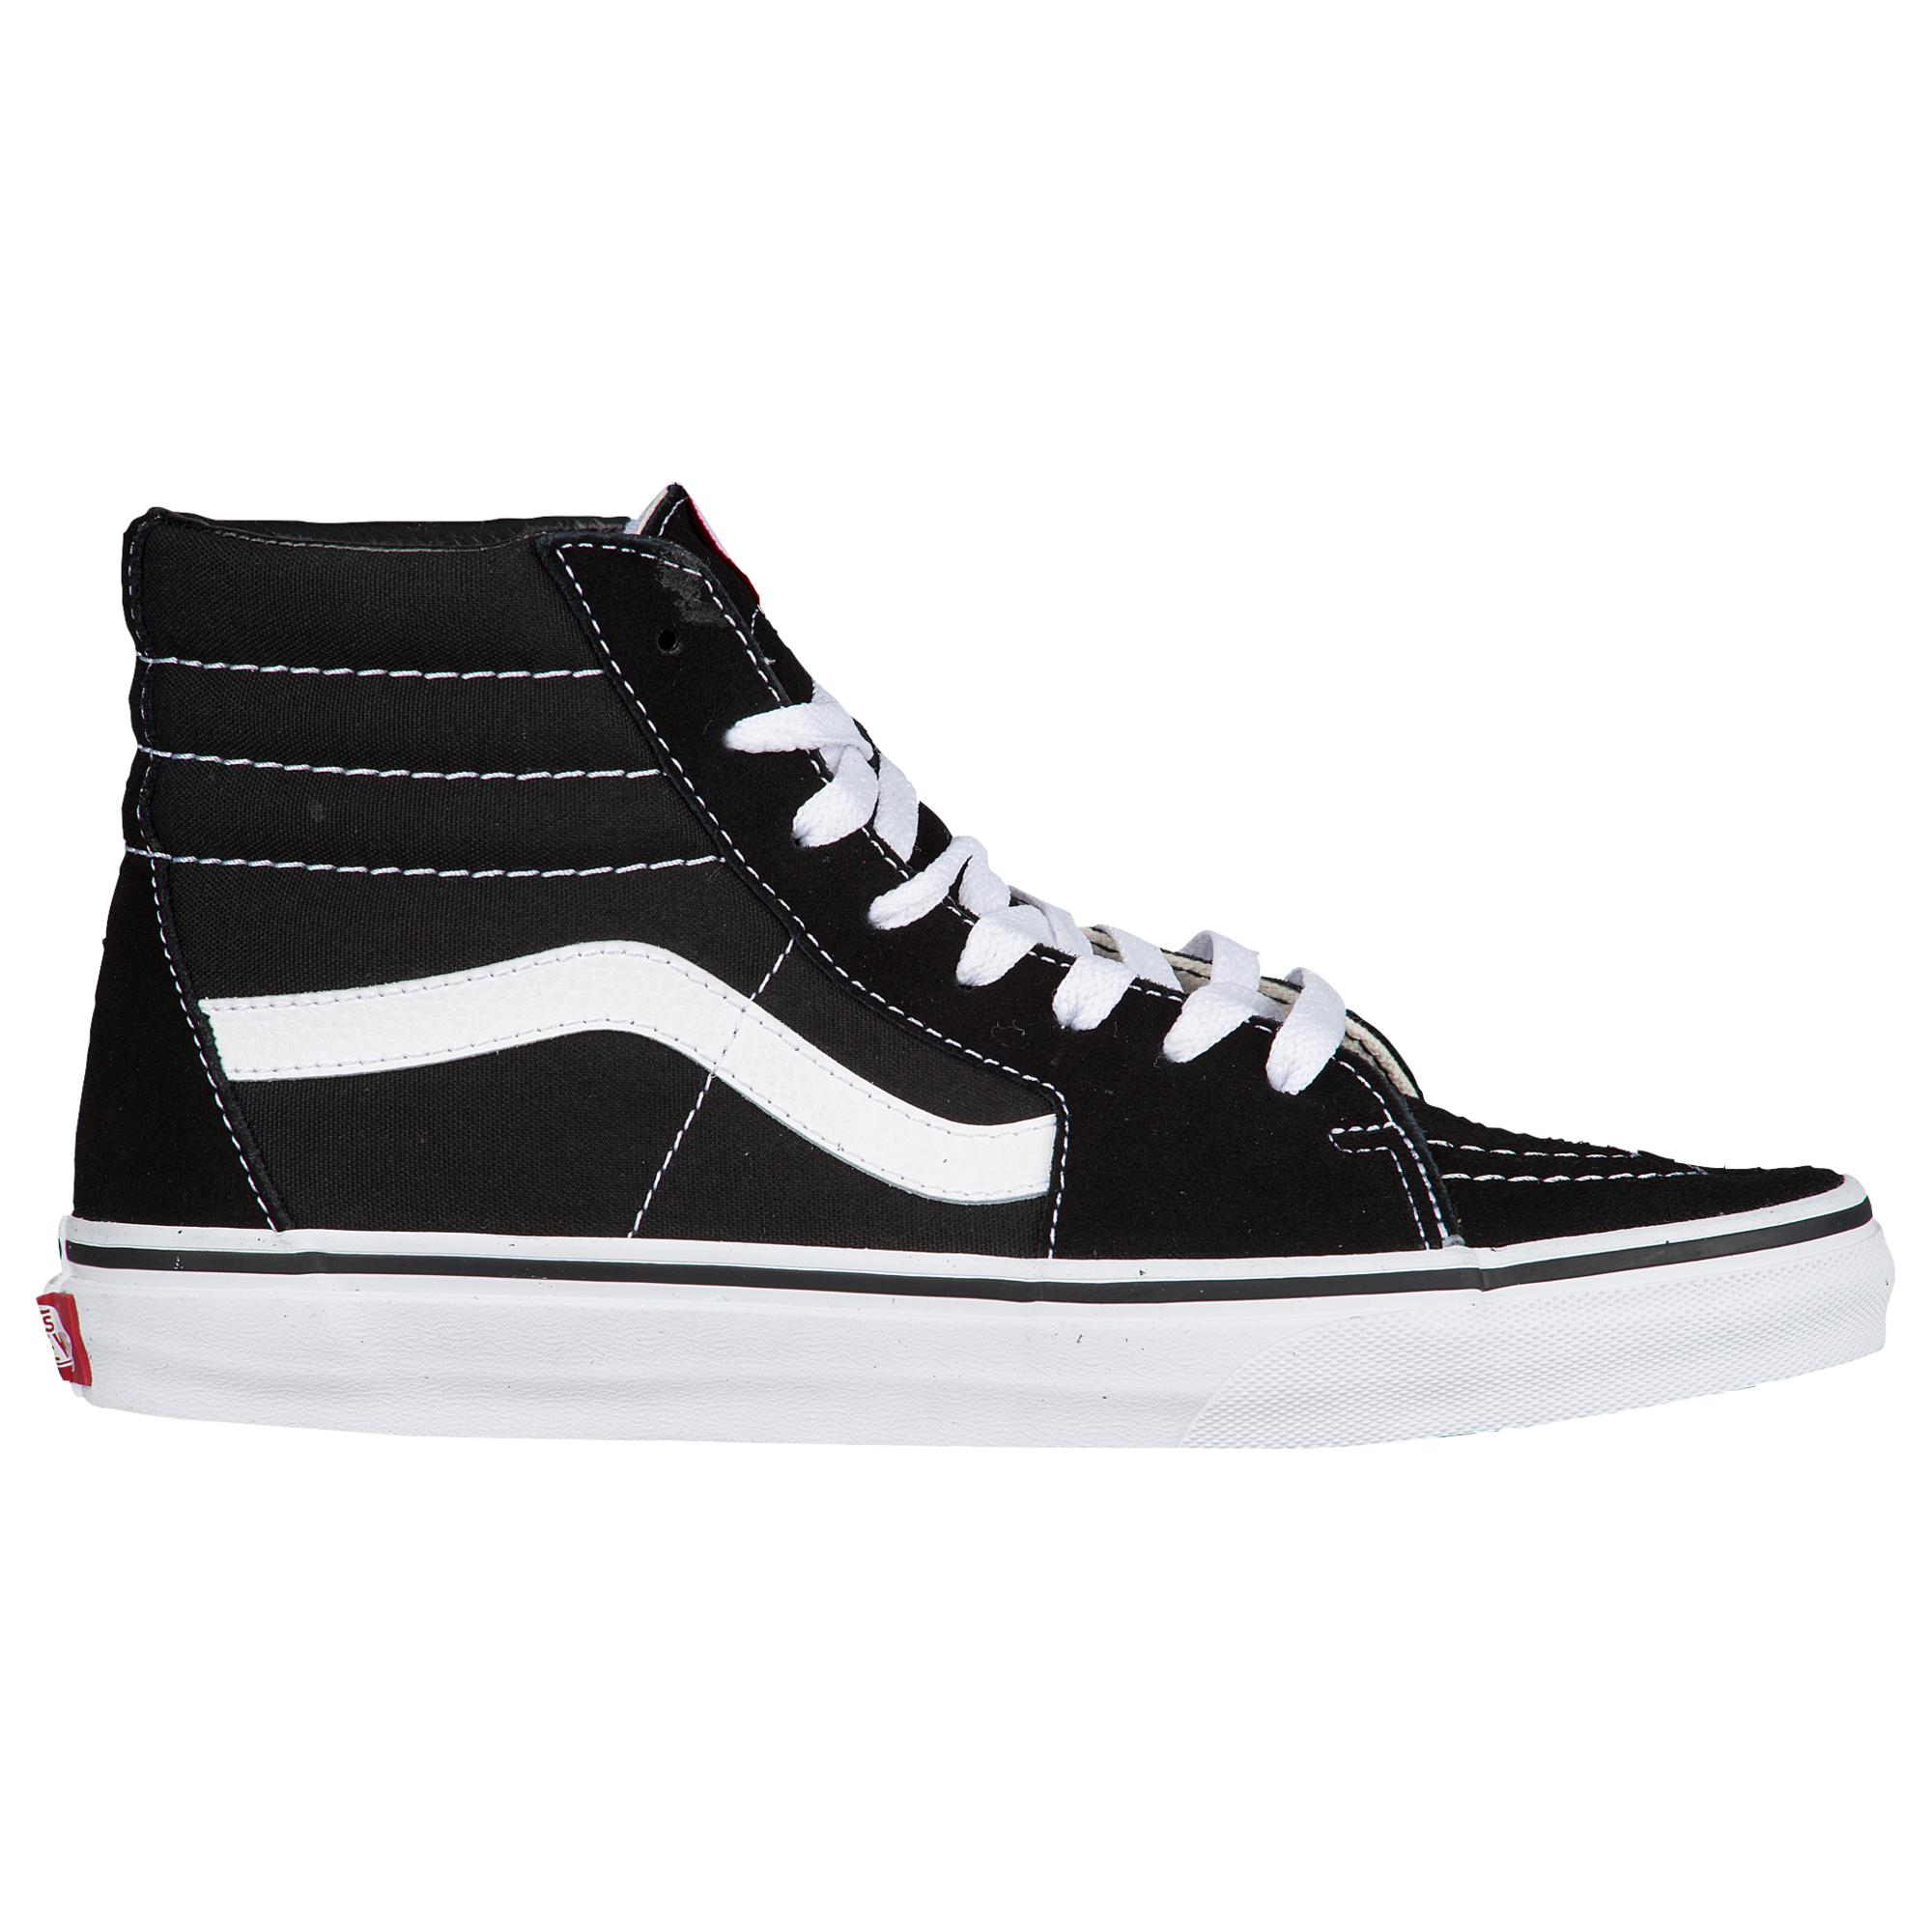 Vans Sk8 Hi Skate/bmx Shoes in Black for Men - Lyst